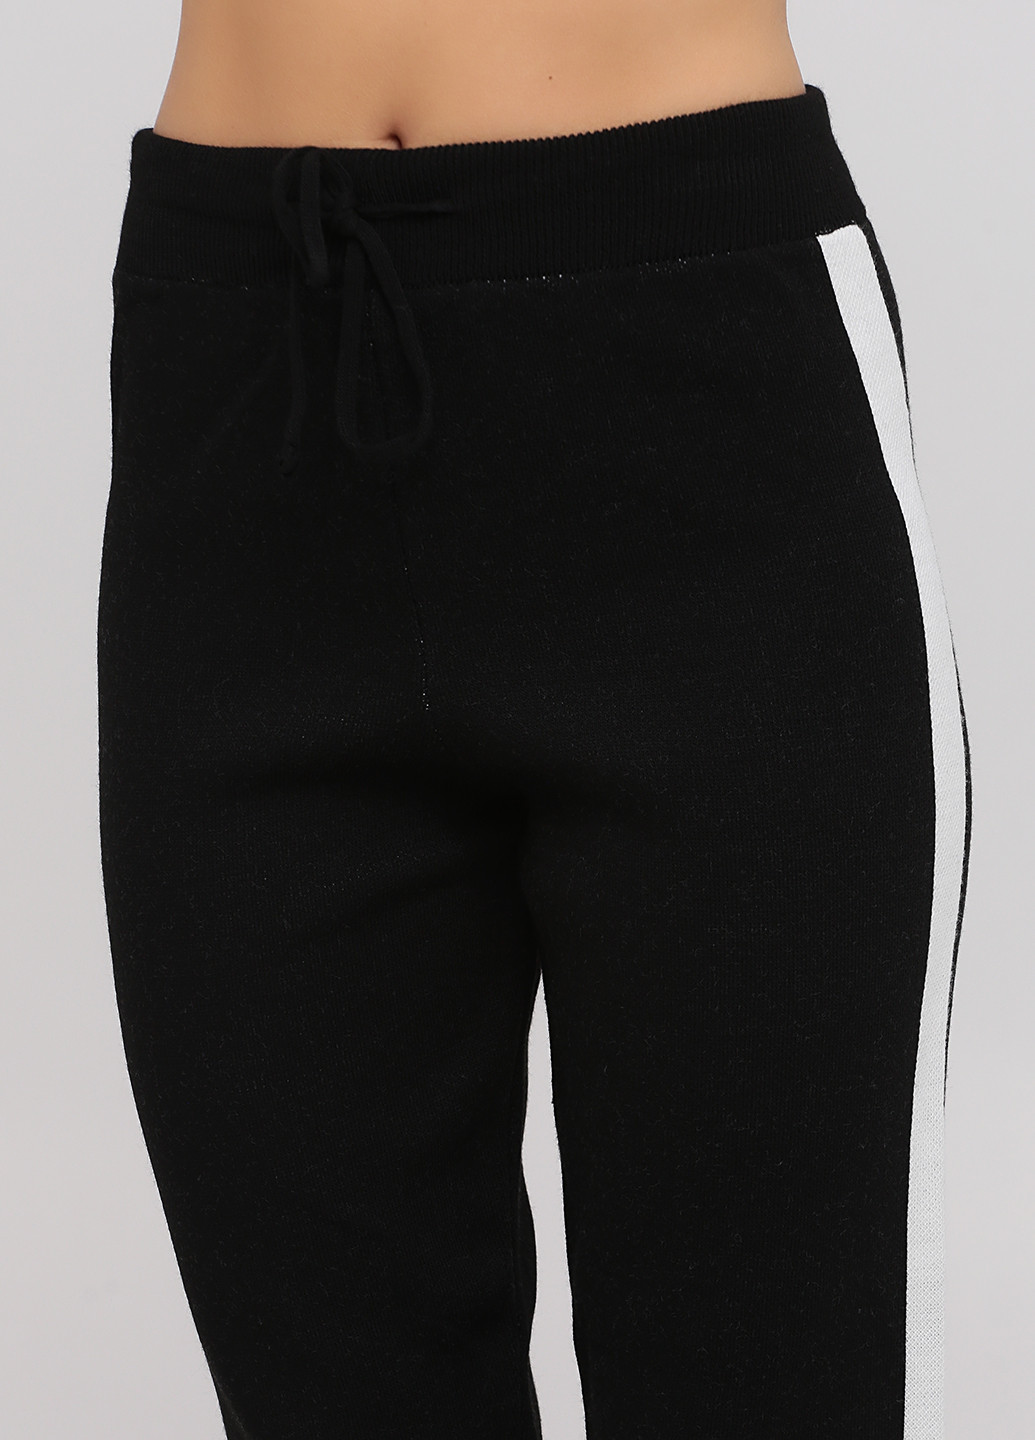 Костюм (свитер, брюки) Sabotage брючный геометрический чёрный кэжуал шерсть, акрил